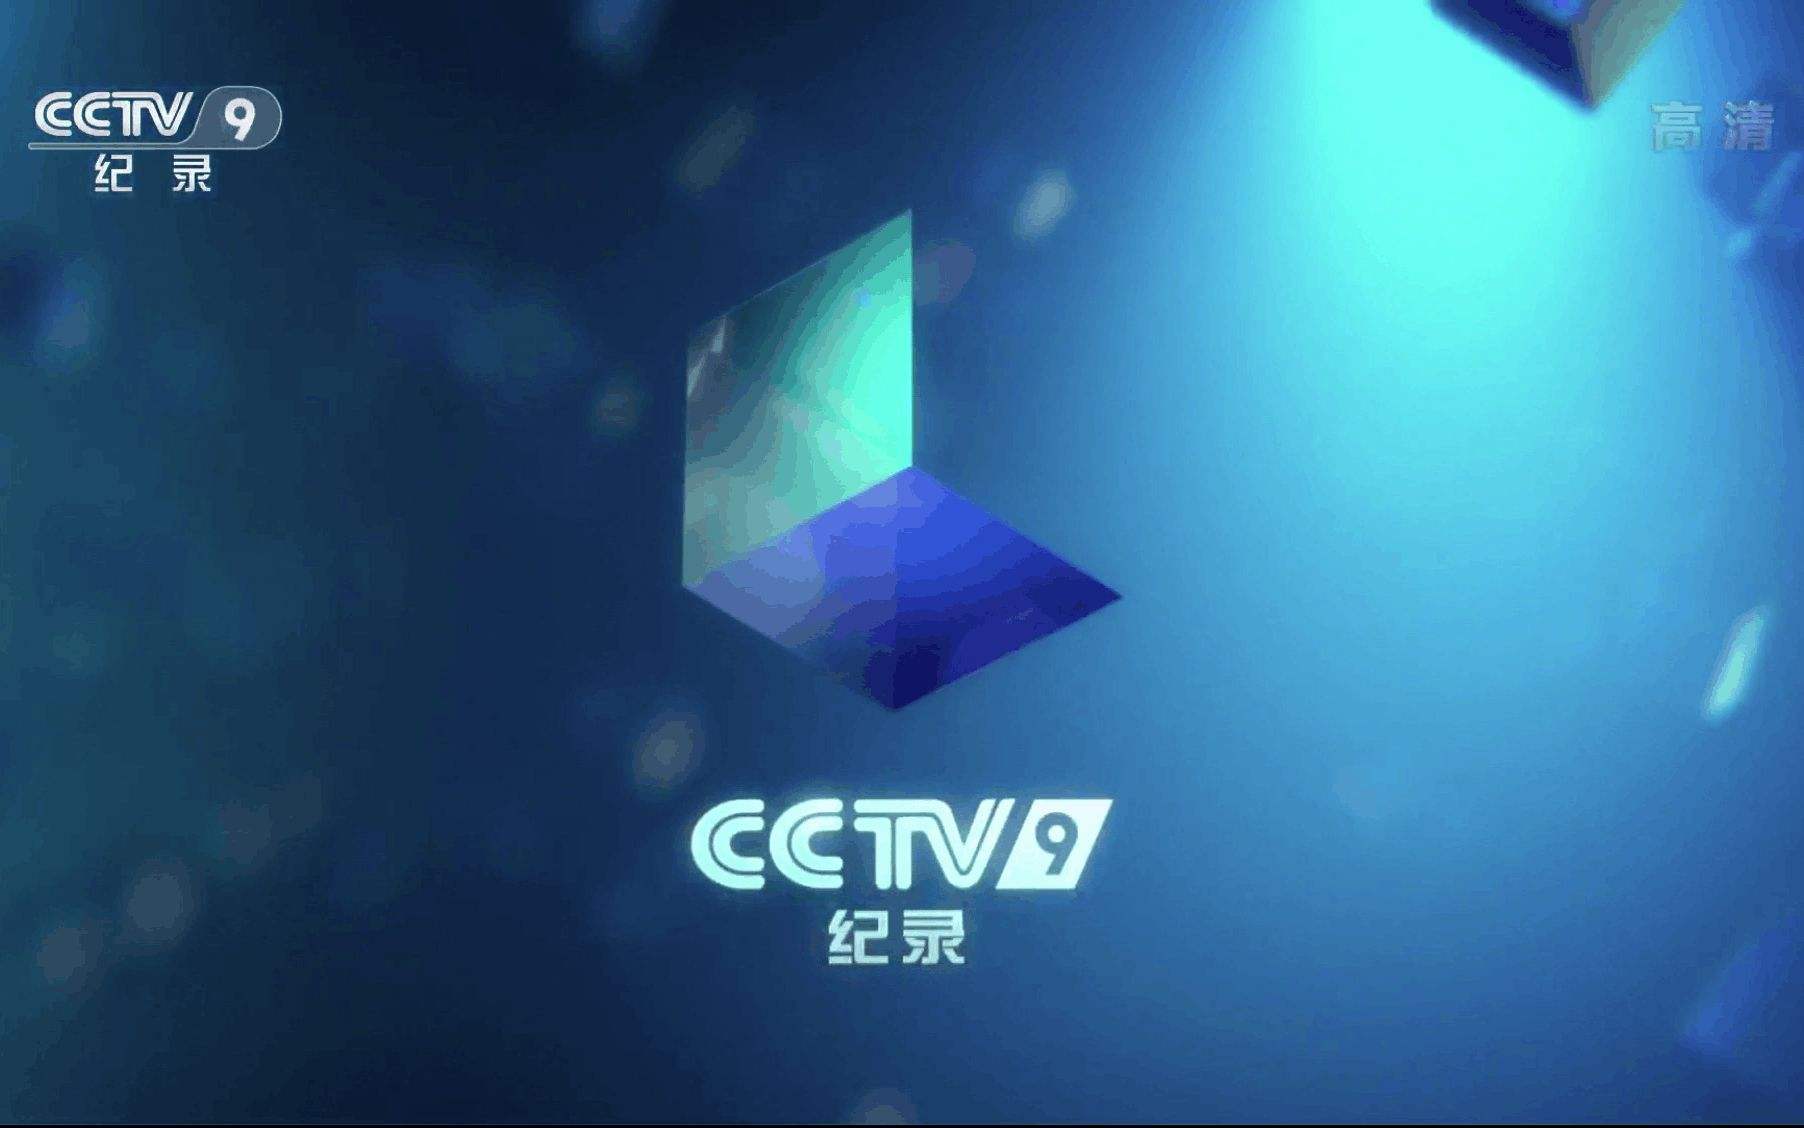 2020年CCTV-9纪录频道广告刊例价格